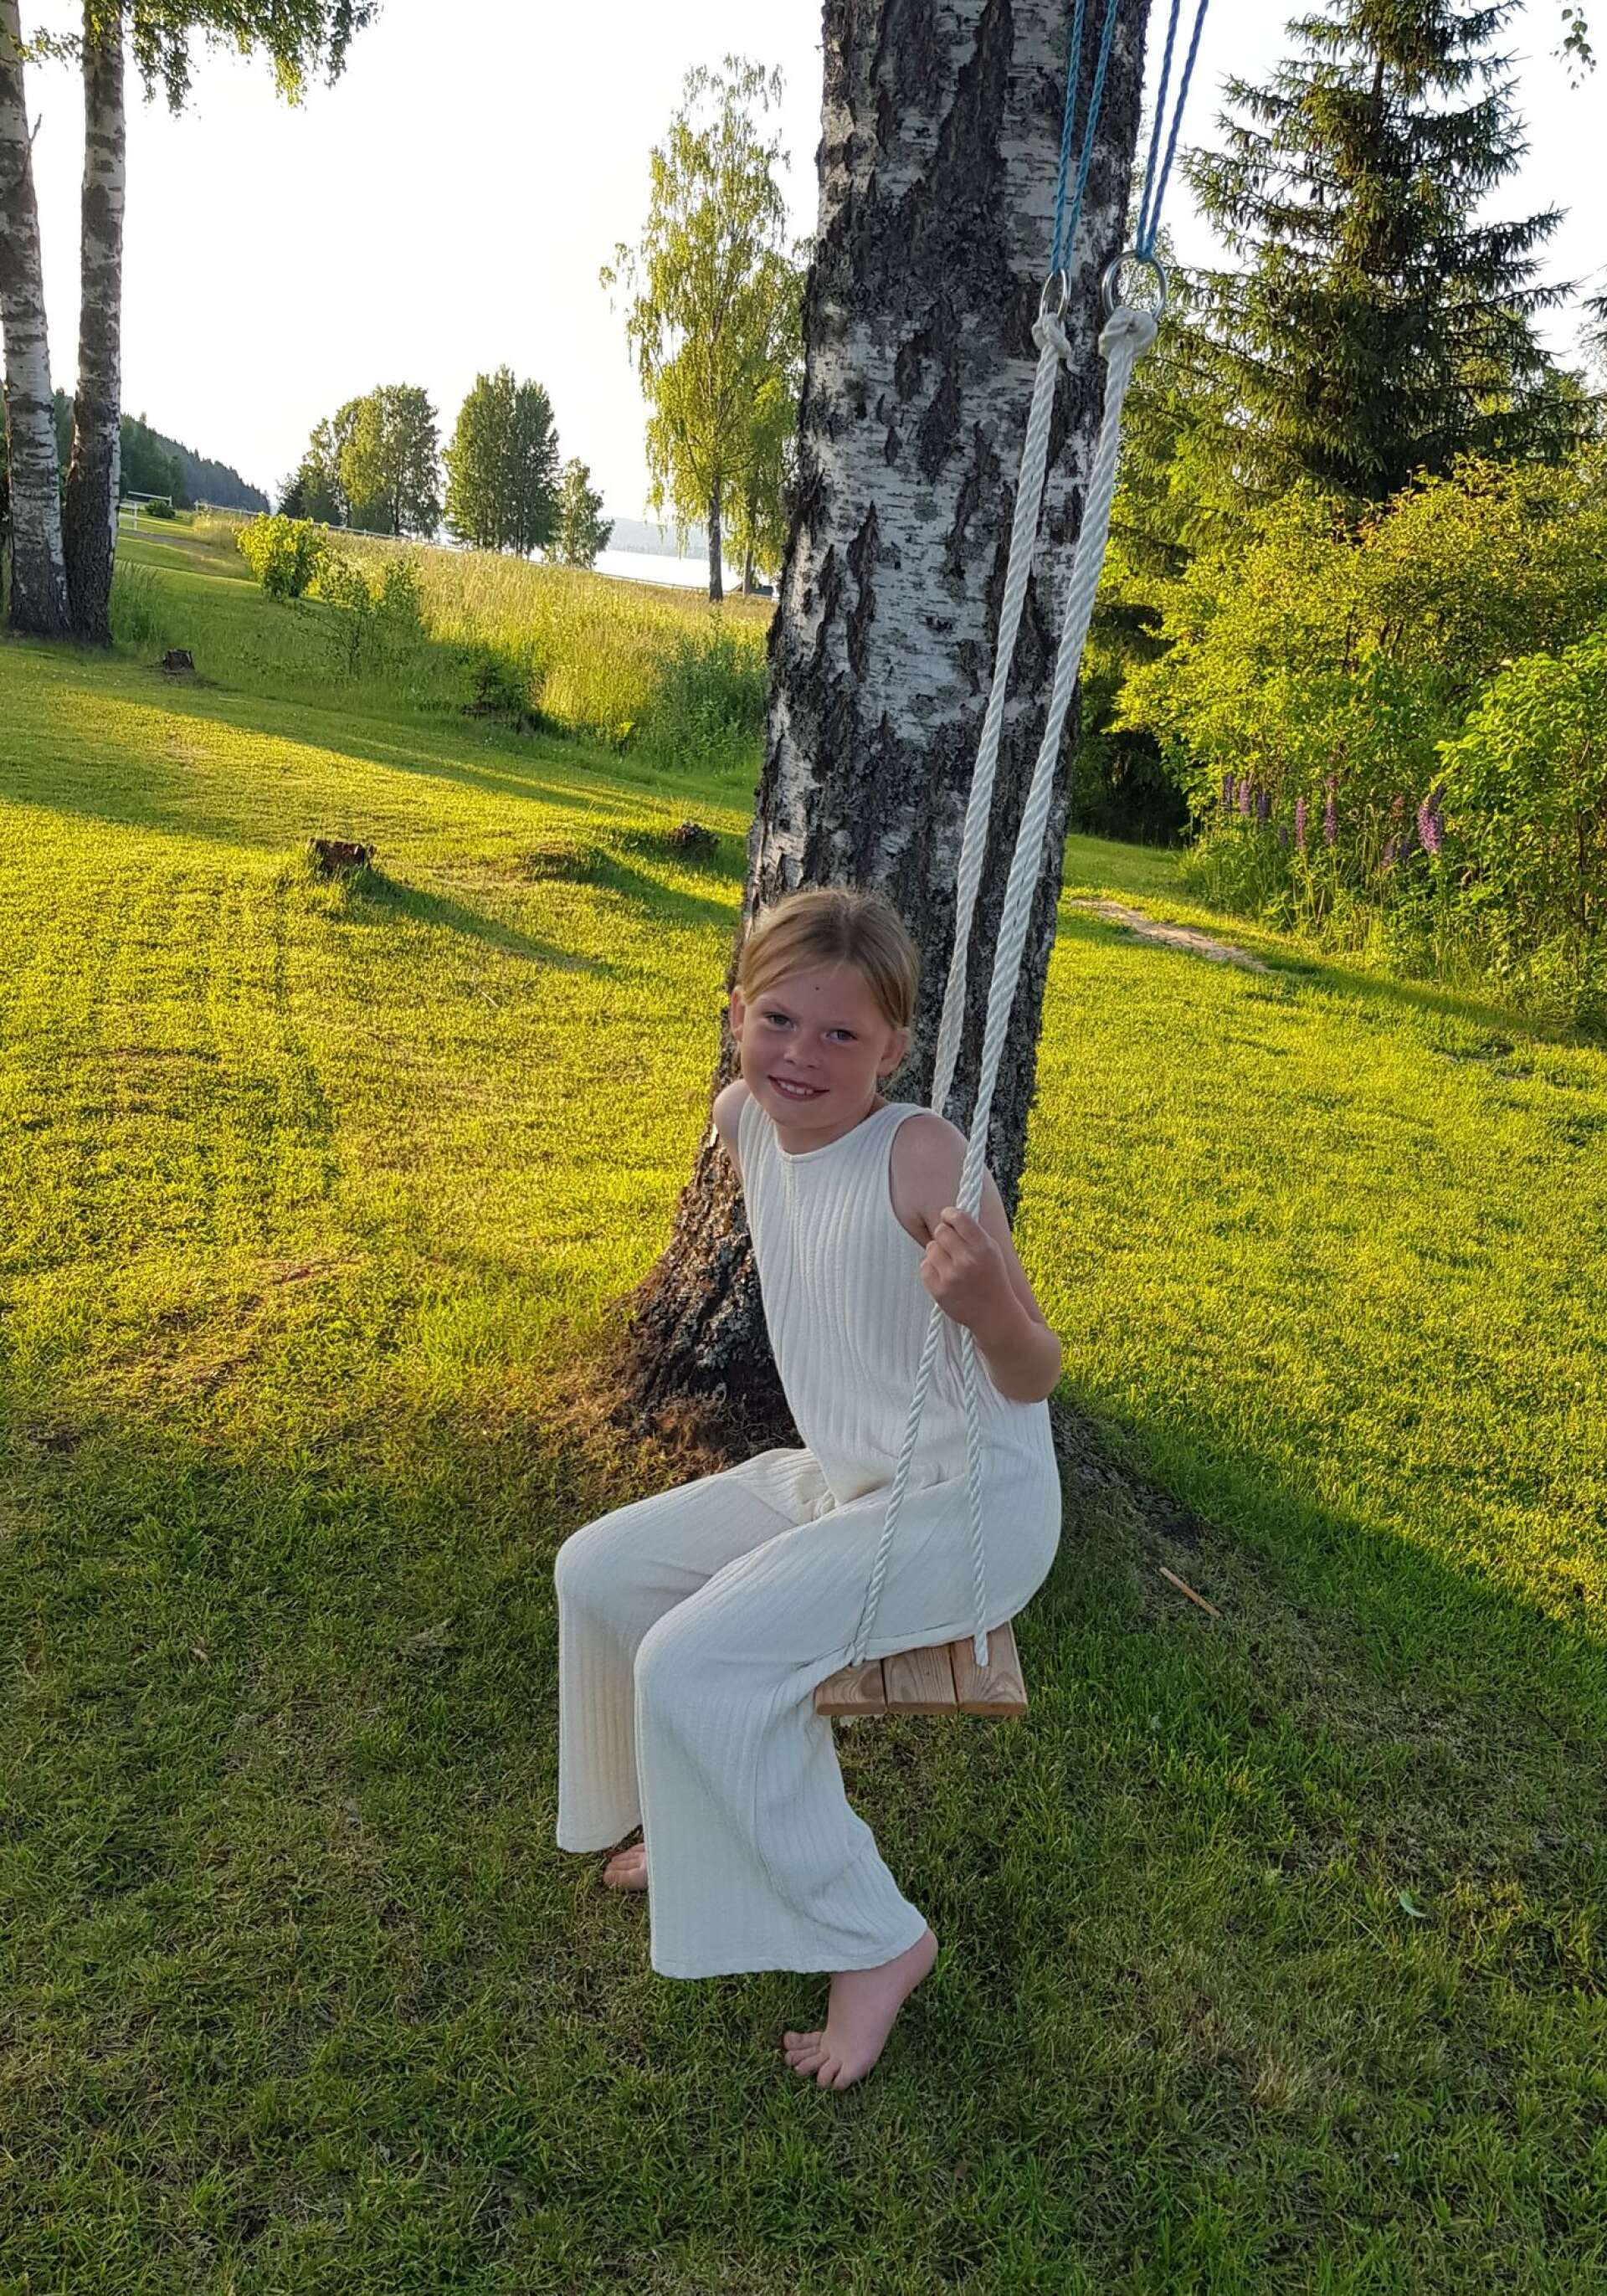 Signe, 8 år från Säffle, firar midsommar vid Rådasjön i Ås. Ann-Louise Jansson har tagit bilden.